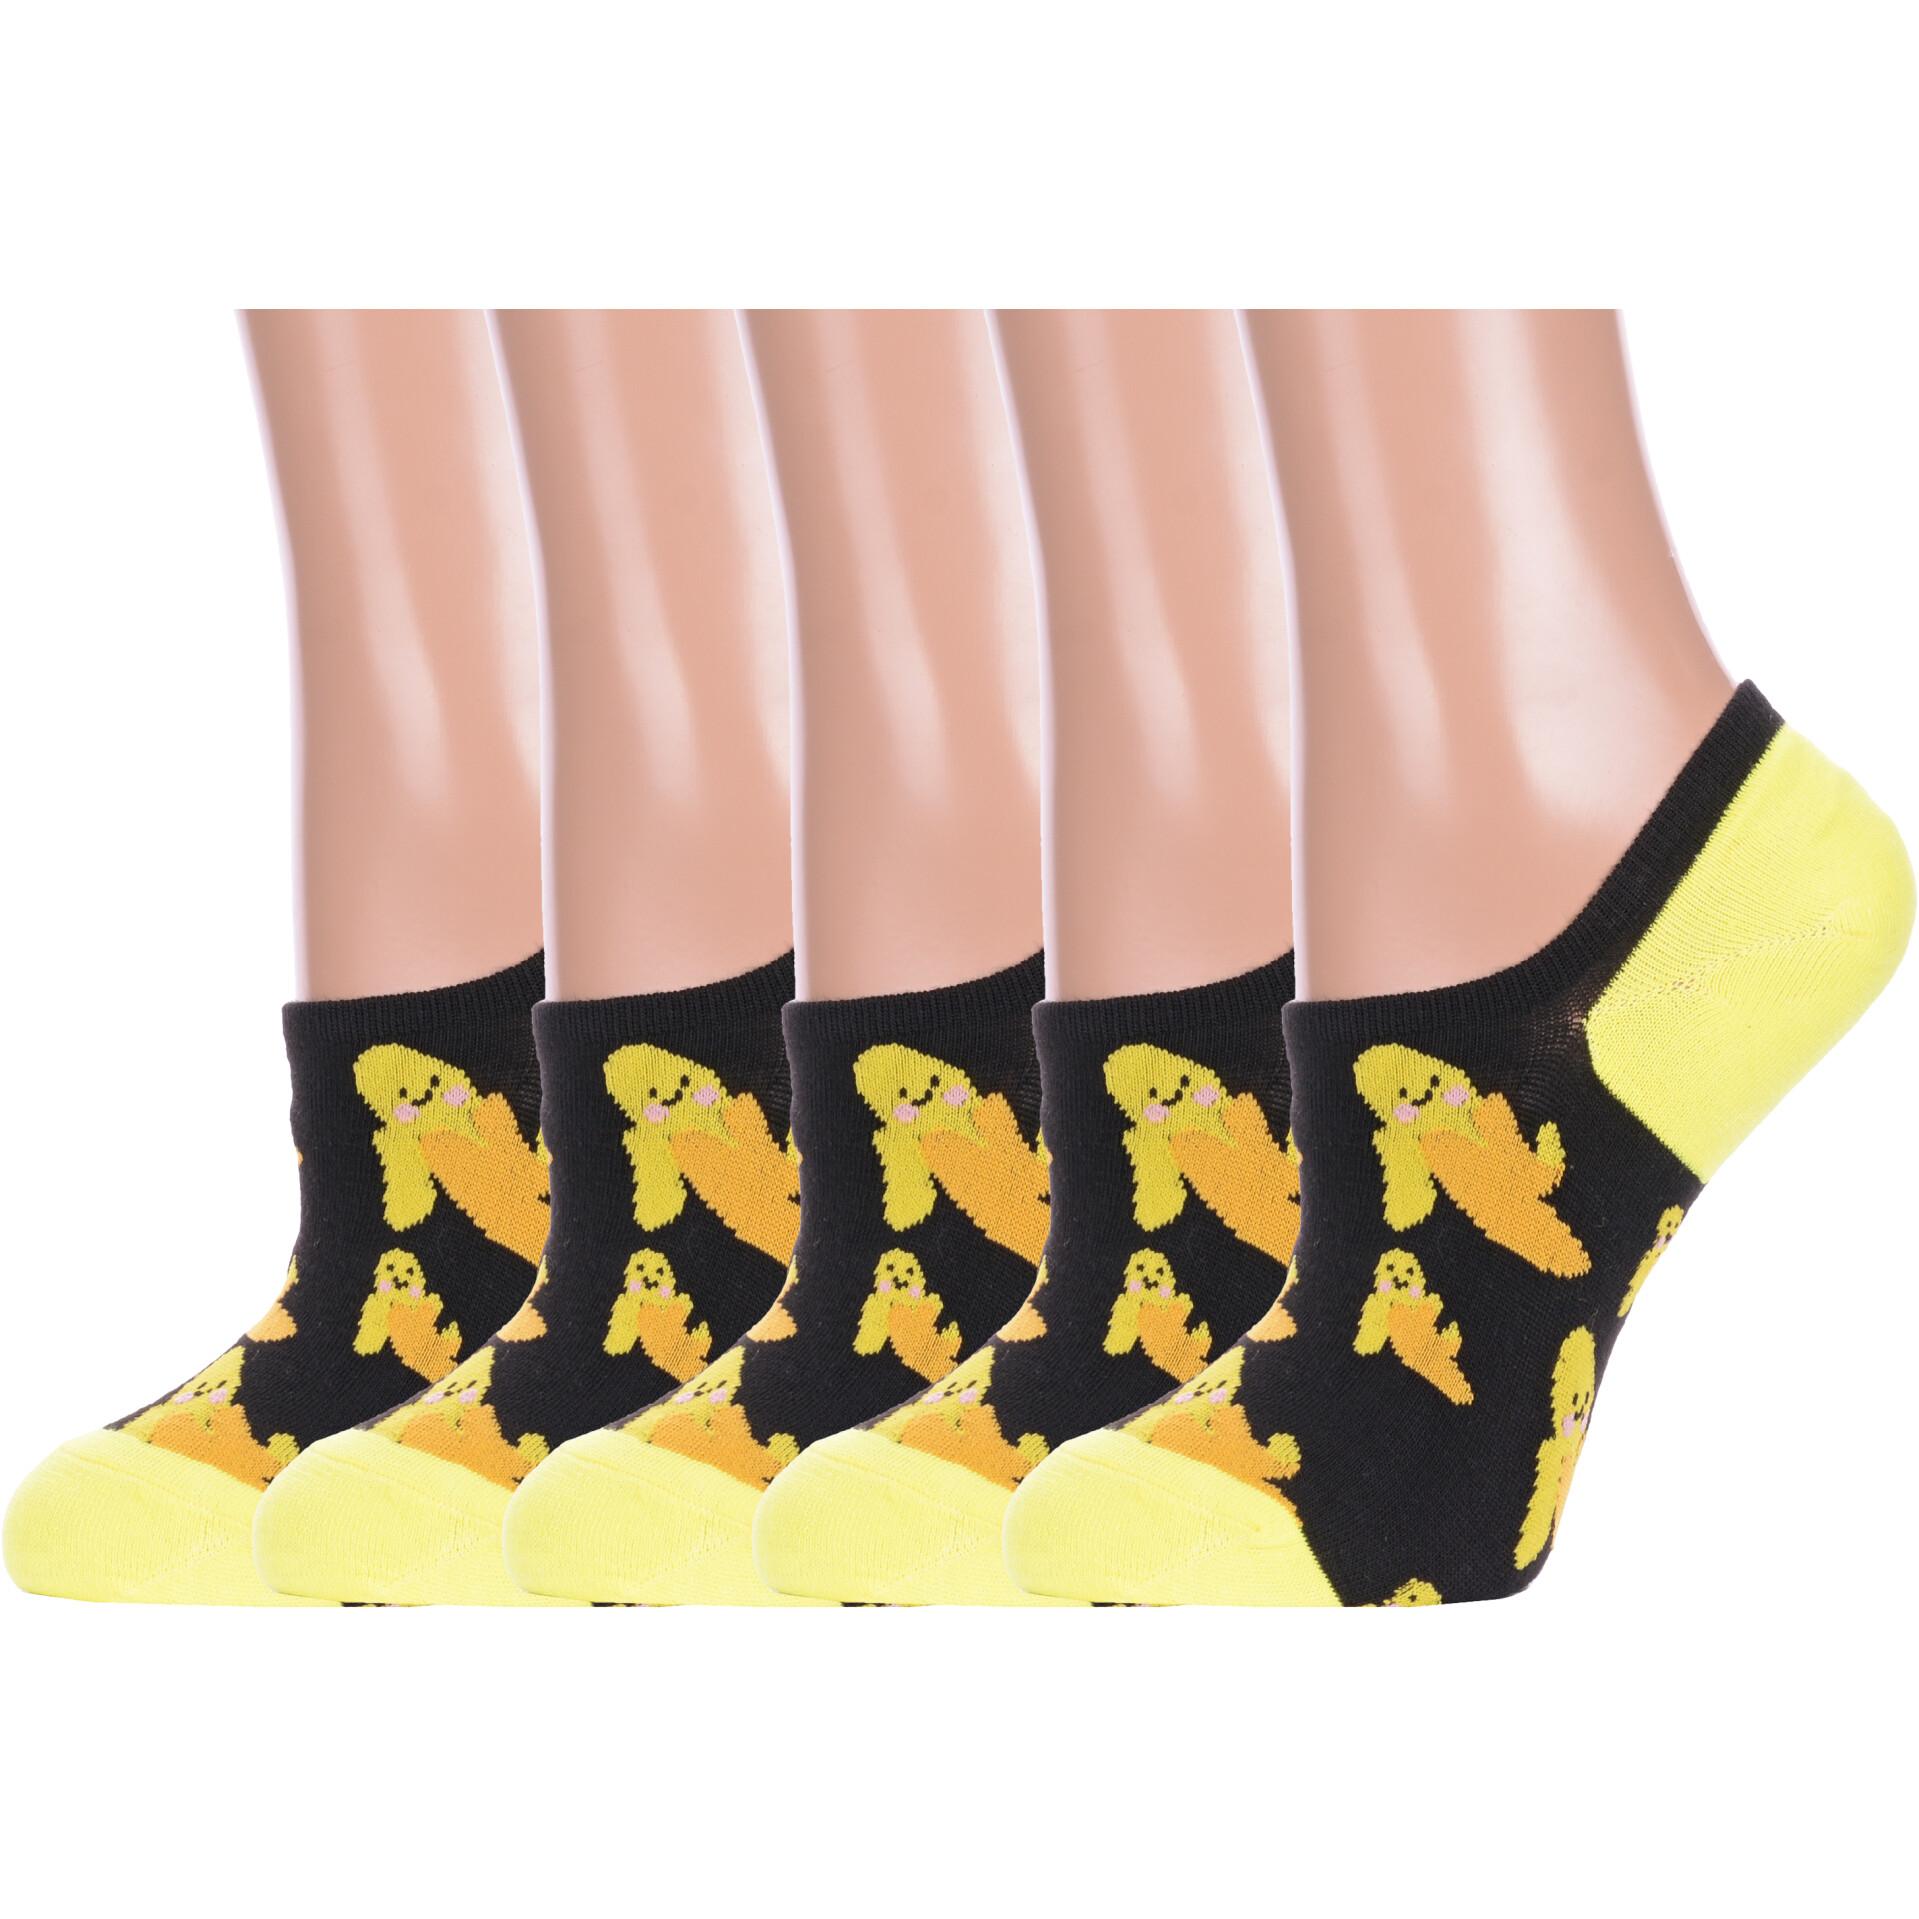 Комплект носков женских Hobby Line 5-ННЖ18-09-03-02 черных, желтых 36-40, 5 пар